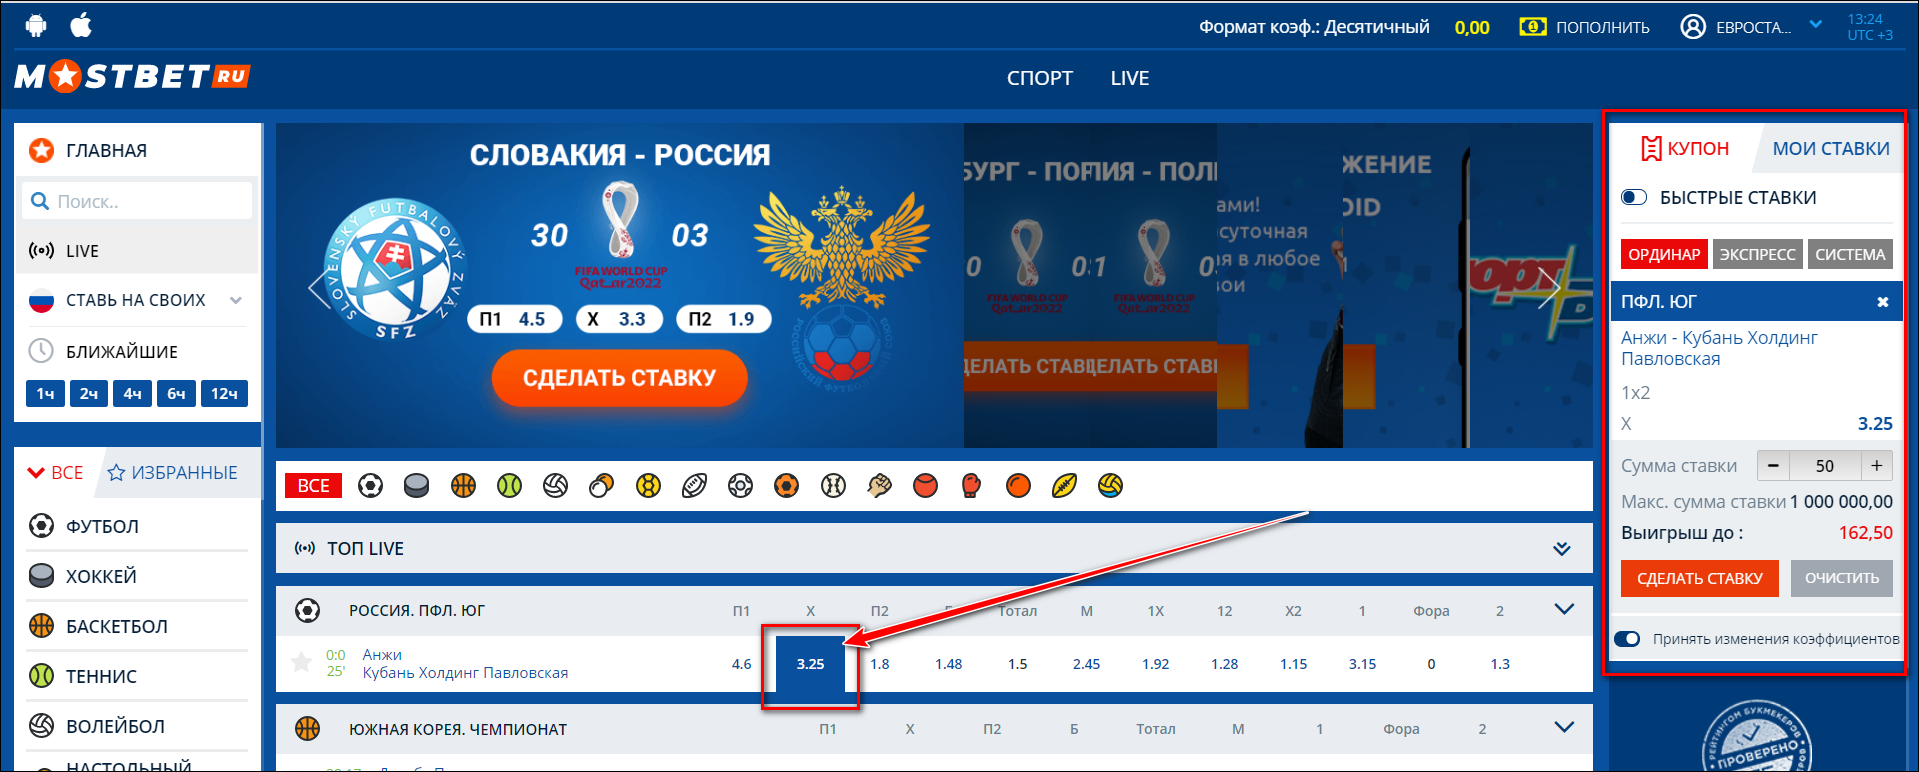 Мостбет зеркало рабочее сегодня mostbet wf1 xyz онлайн рулетка на реальные деньги рубли вулкан